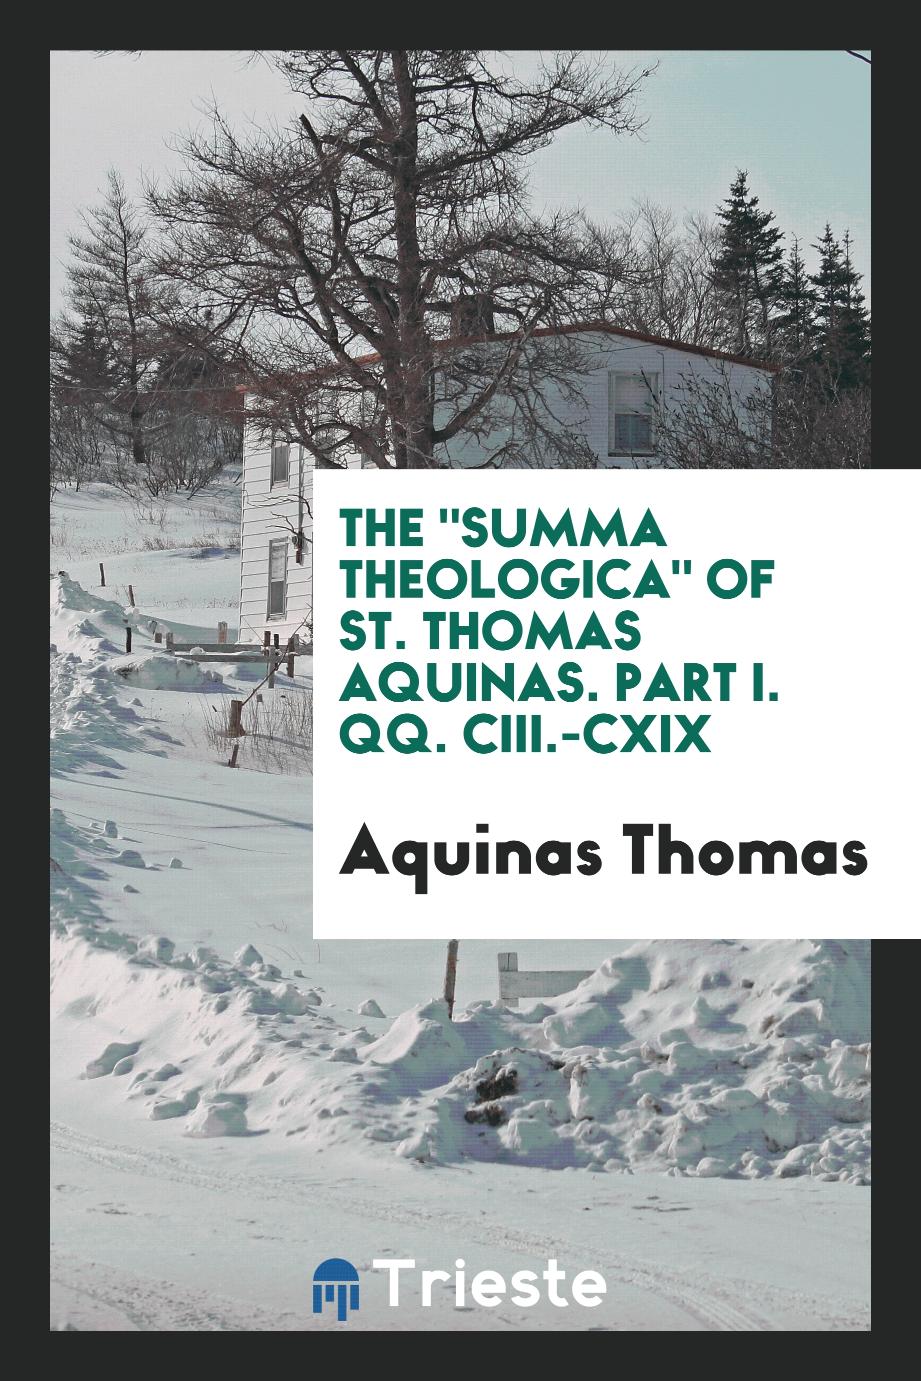 The "Summa theologica" of St. Thomas Aquinas. Part I. QQ. CIII.-CXIX